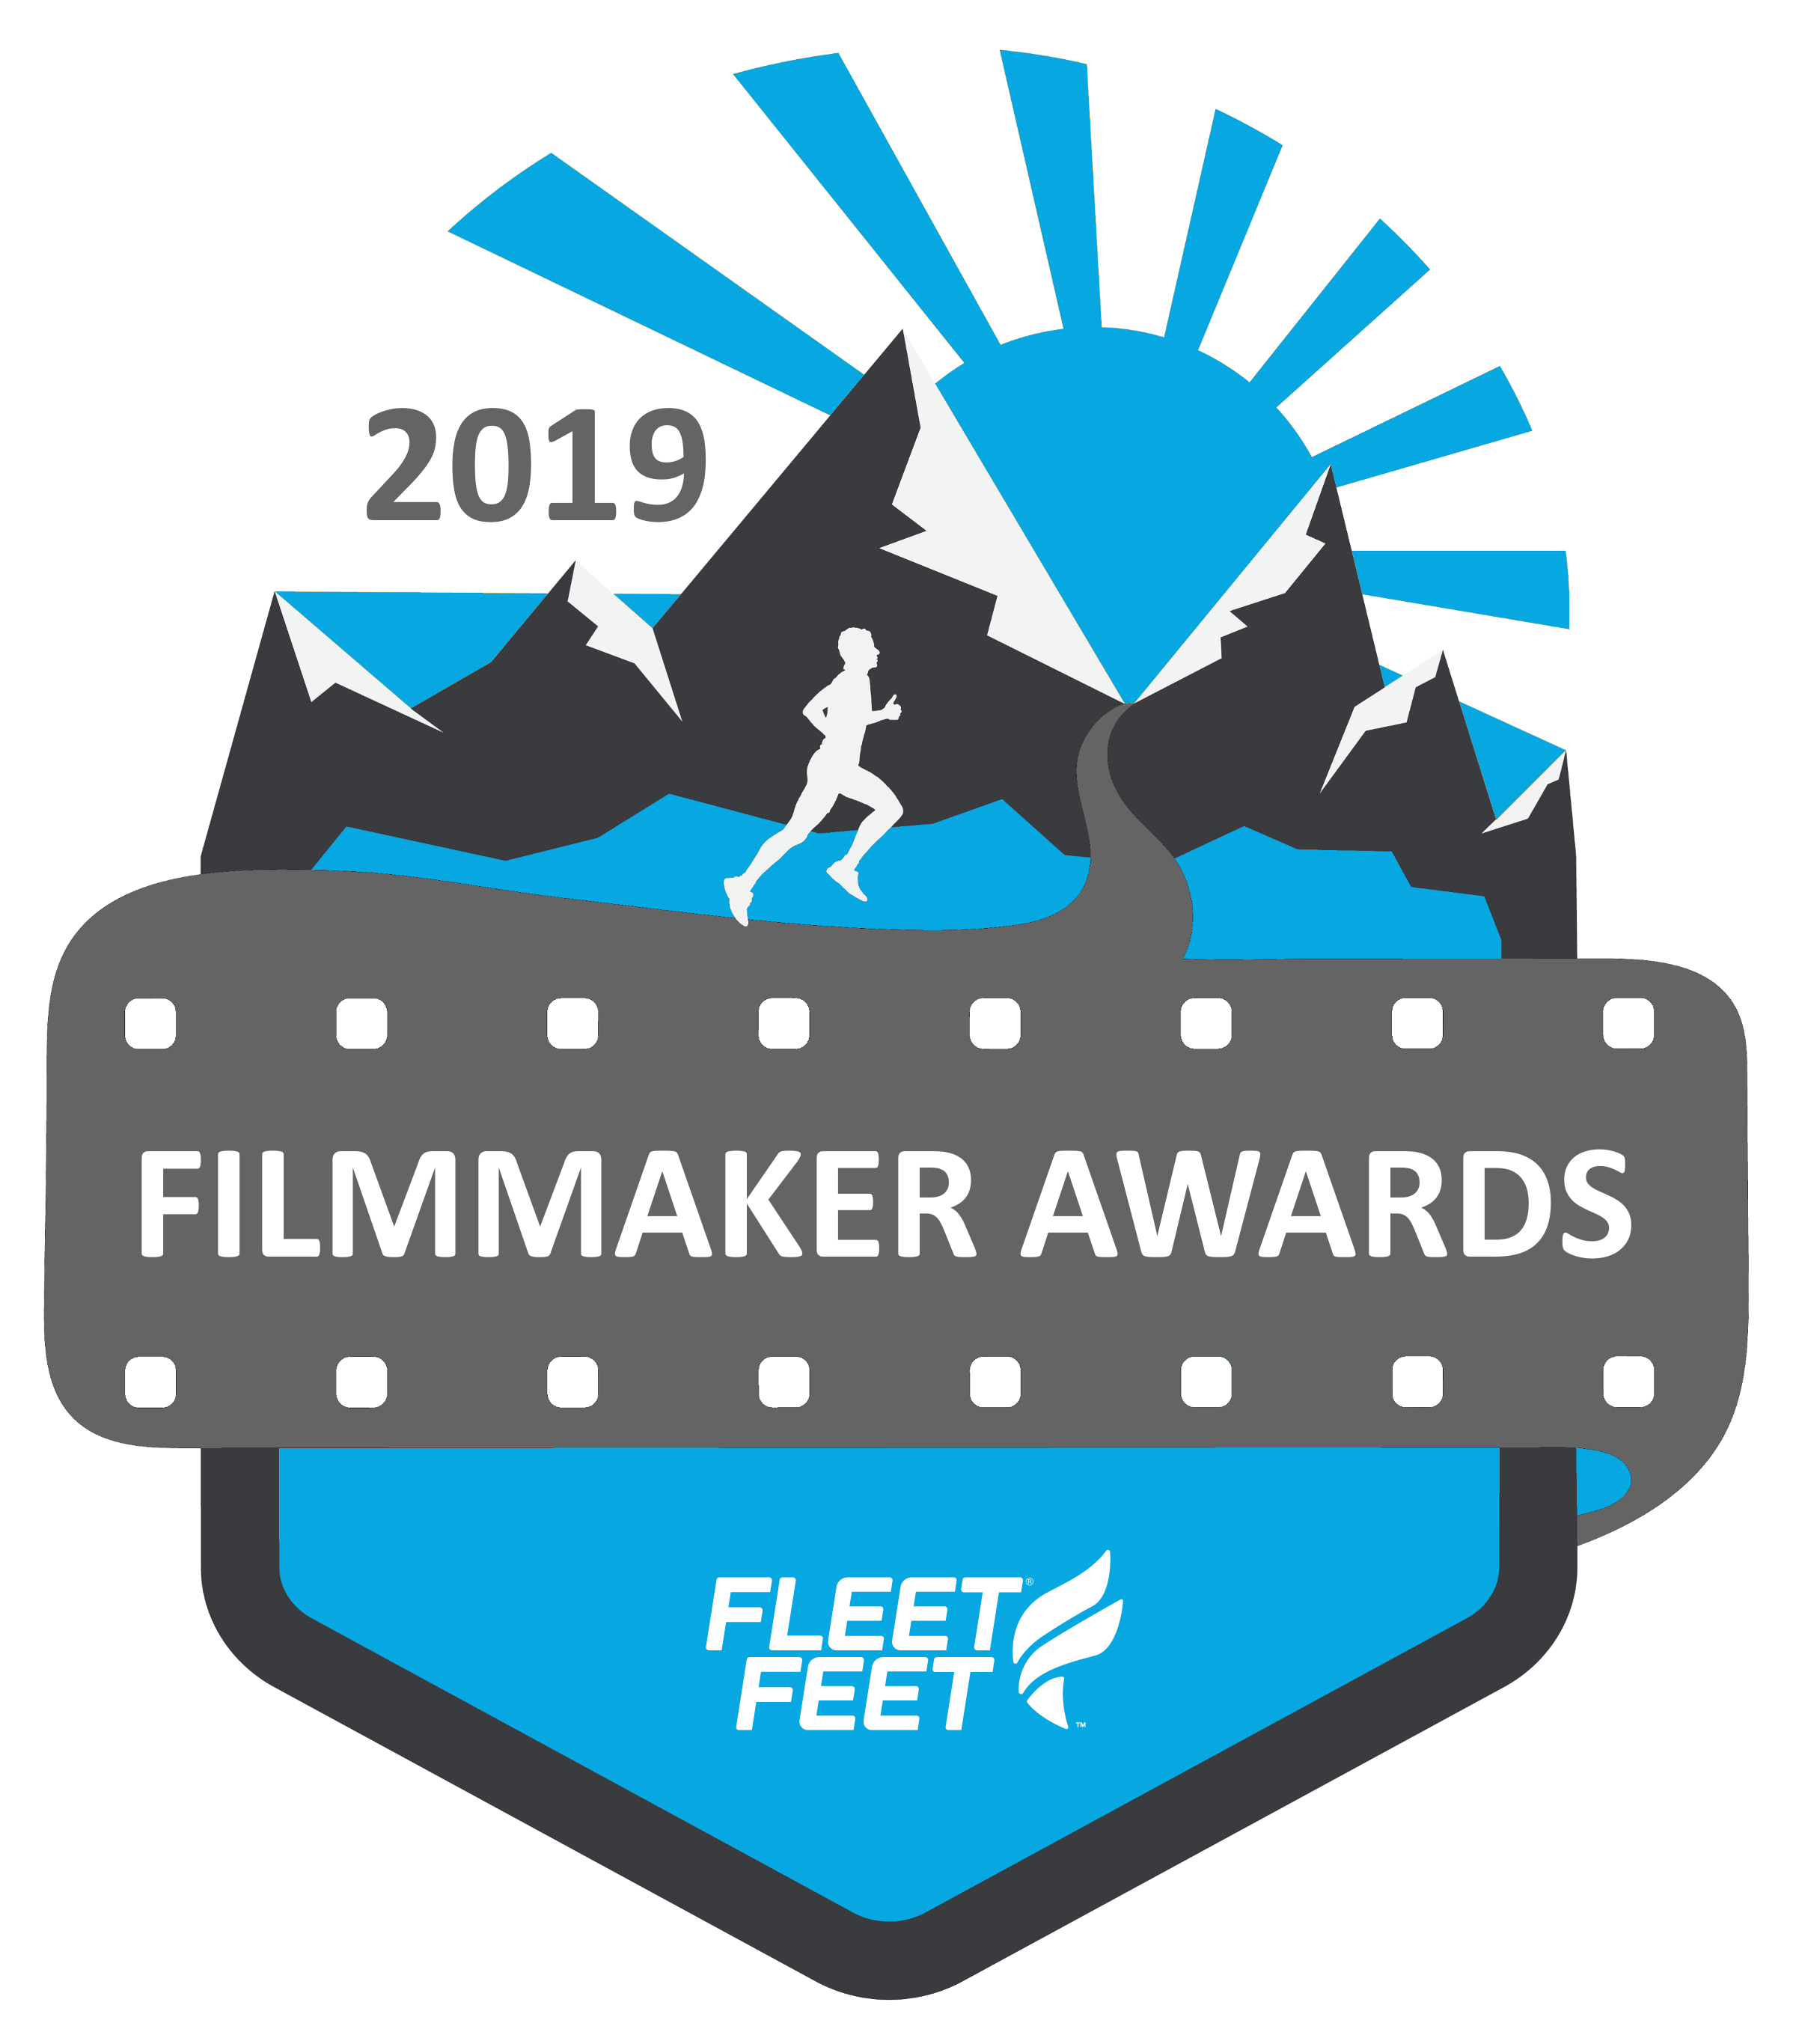 Fleet Feet Filmmaker Awards.